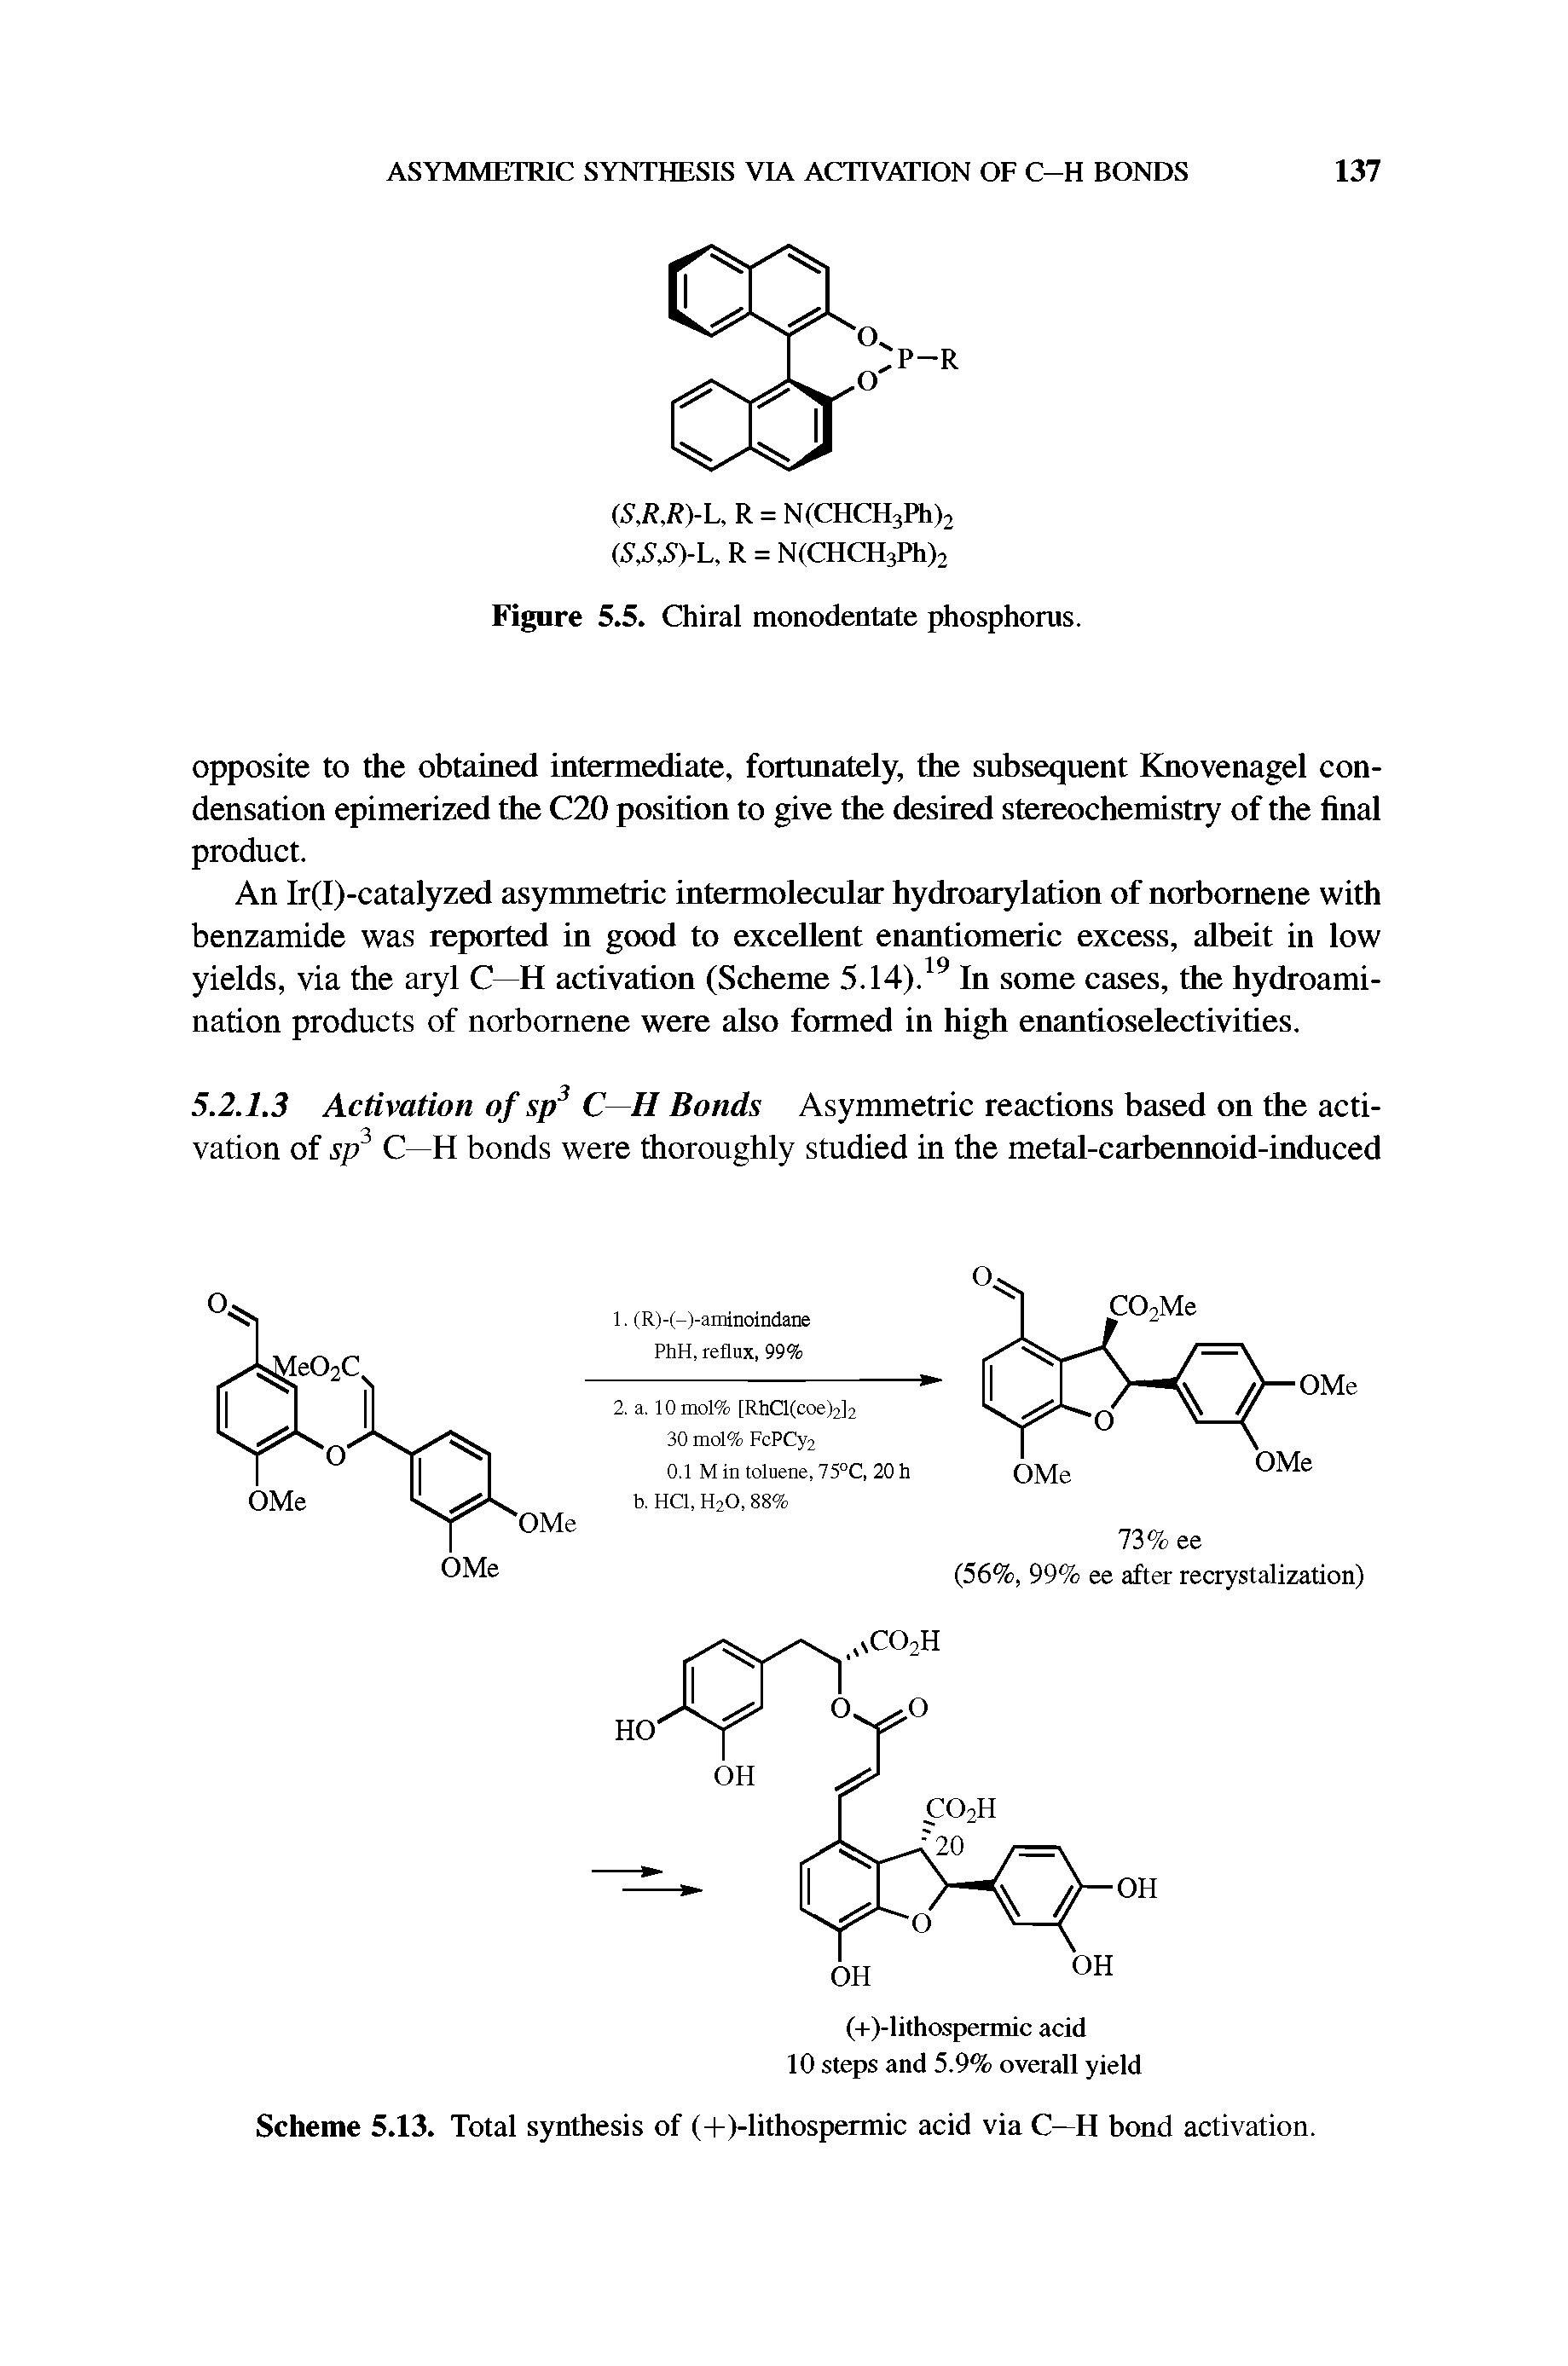 Scheme 5.13. Total synthesis of (-l-)-lithospermic acid via C—H bond activation.